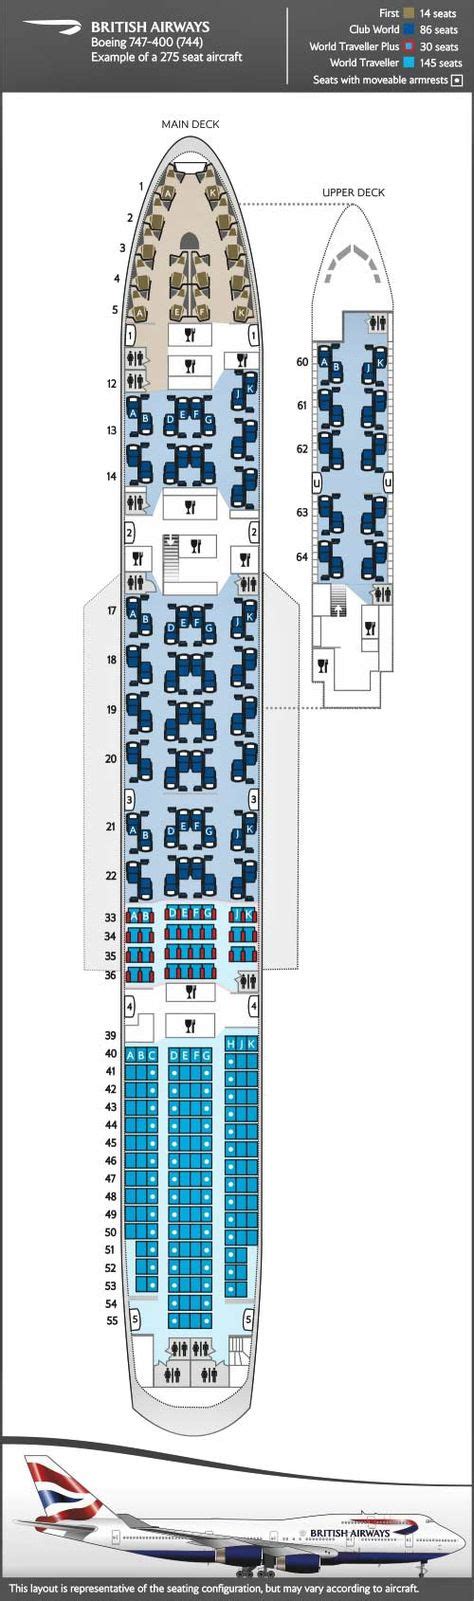 row 53 ba 747 seats